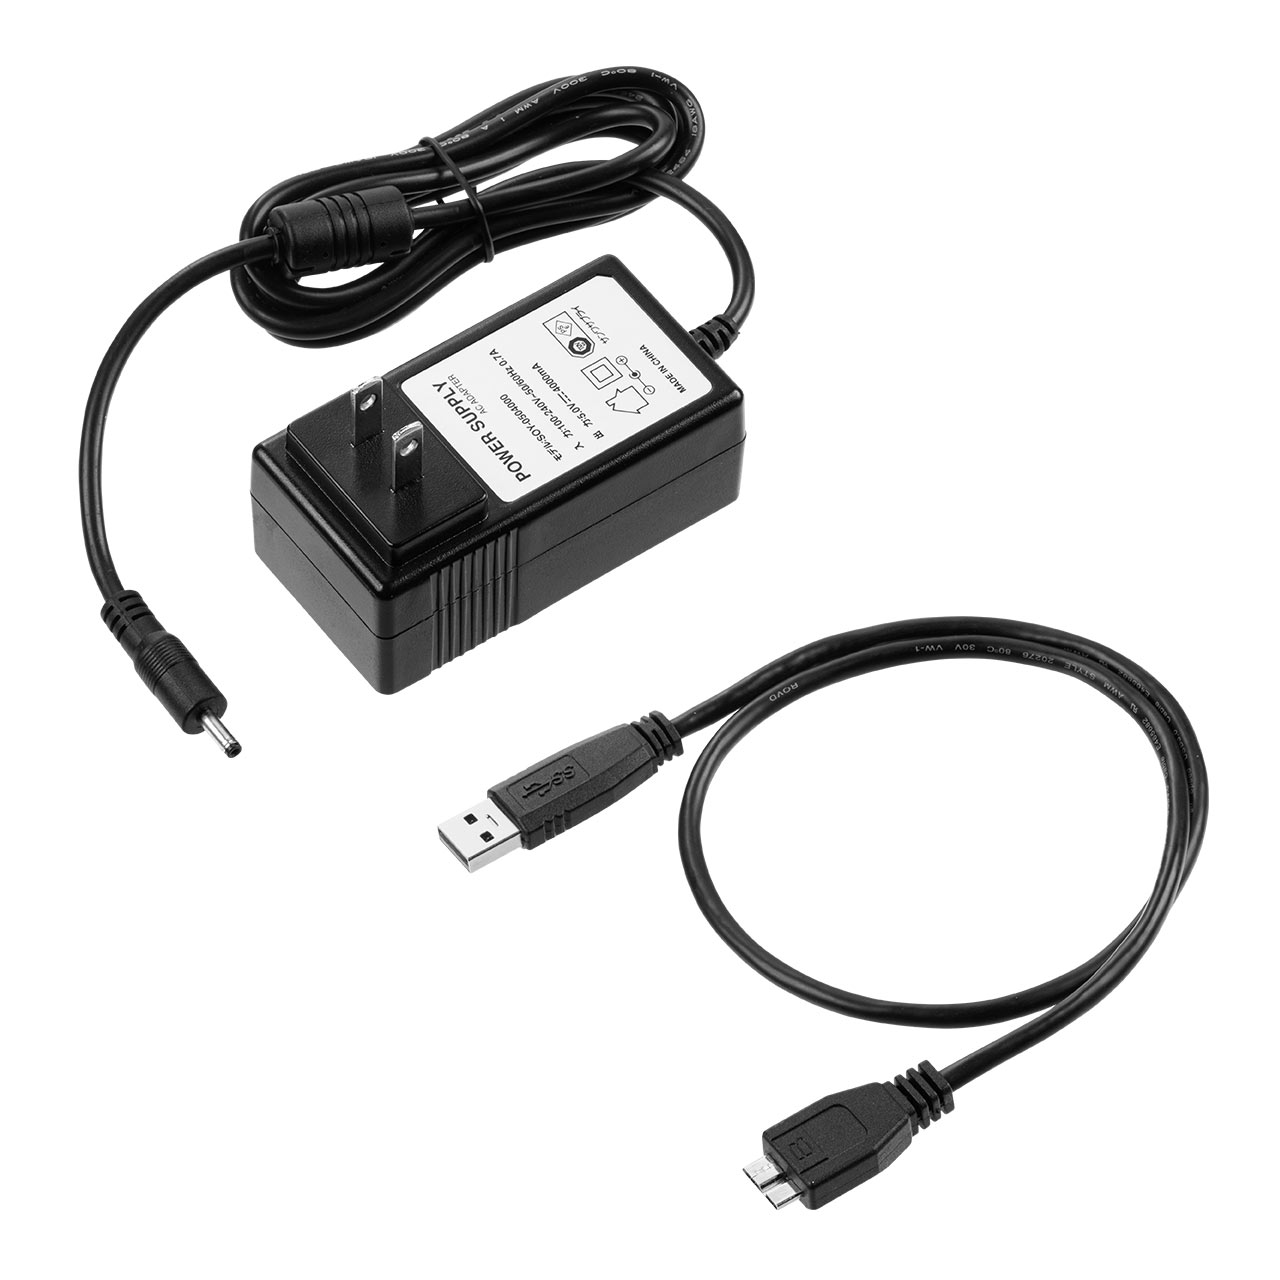 USB3.1/3.0ハブ（セルフパワー・バスパワー対応・ACアダプタ付き・7ポート・ブラック） 400-HUB070BK